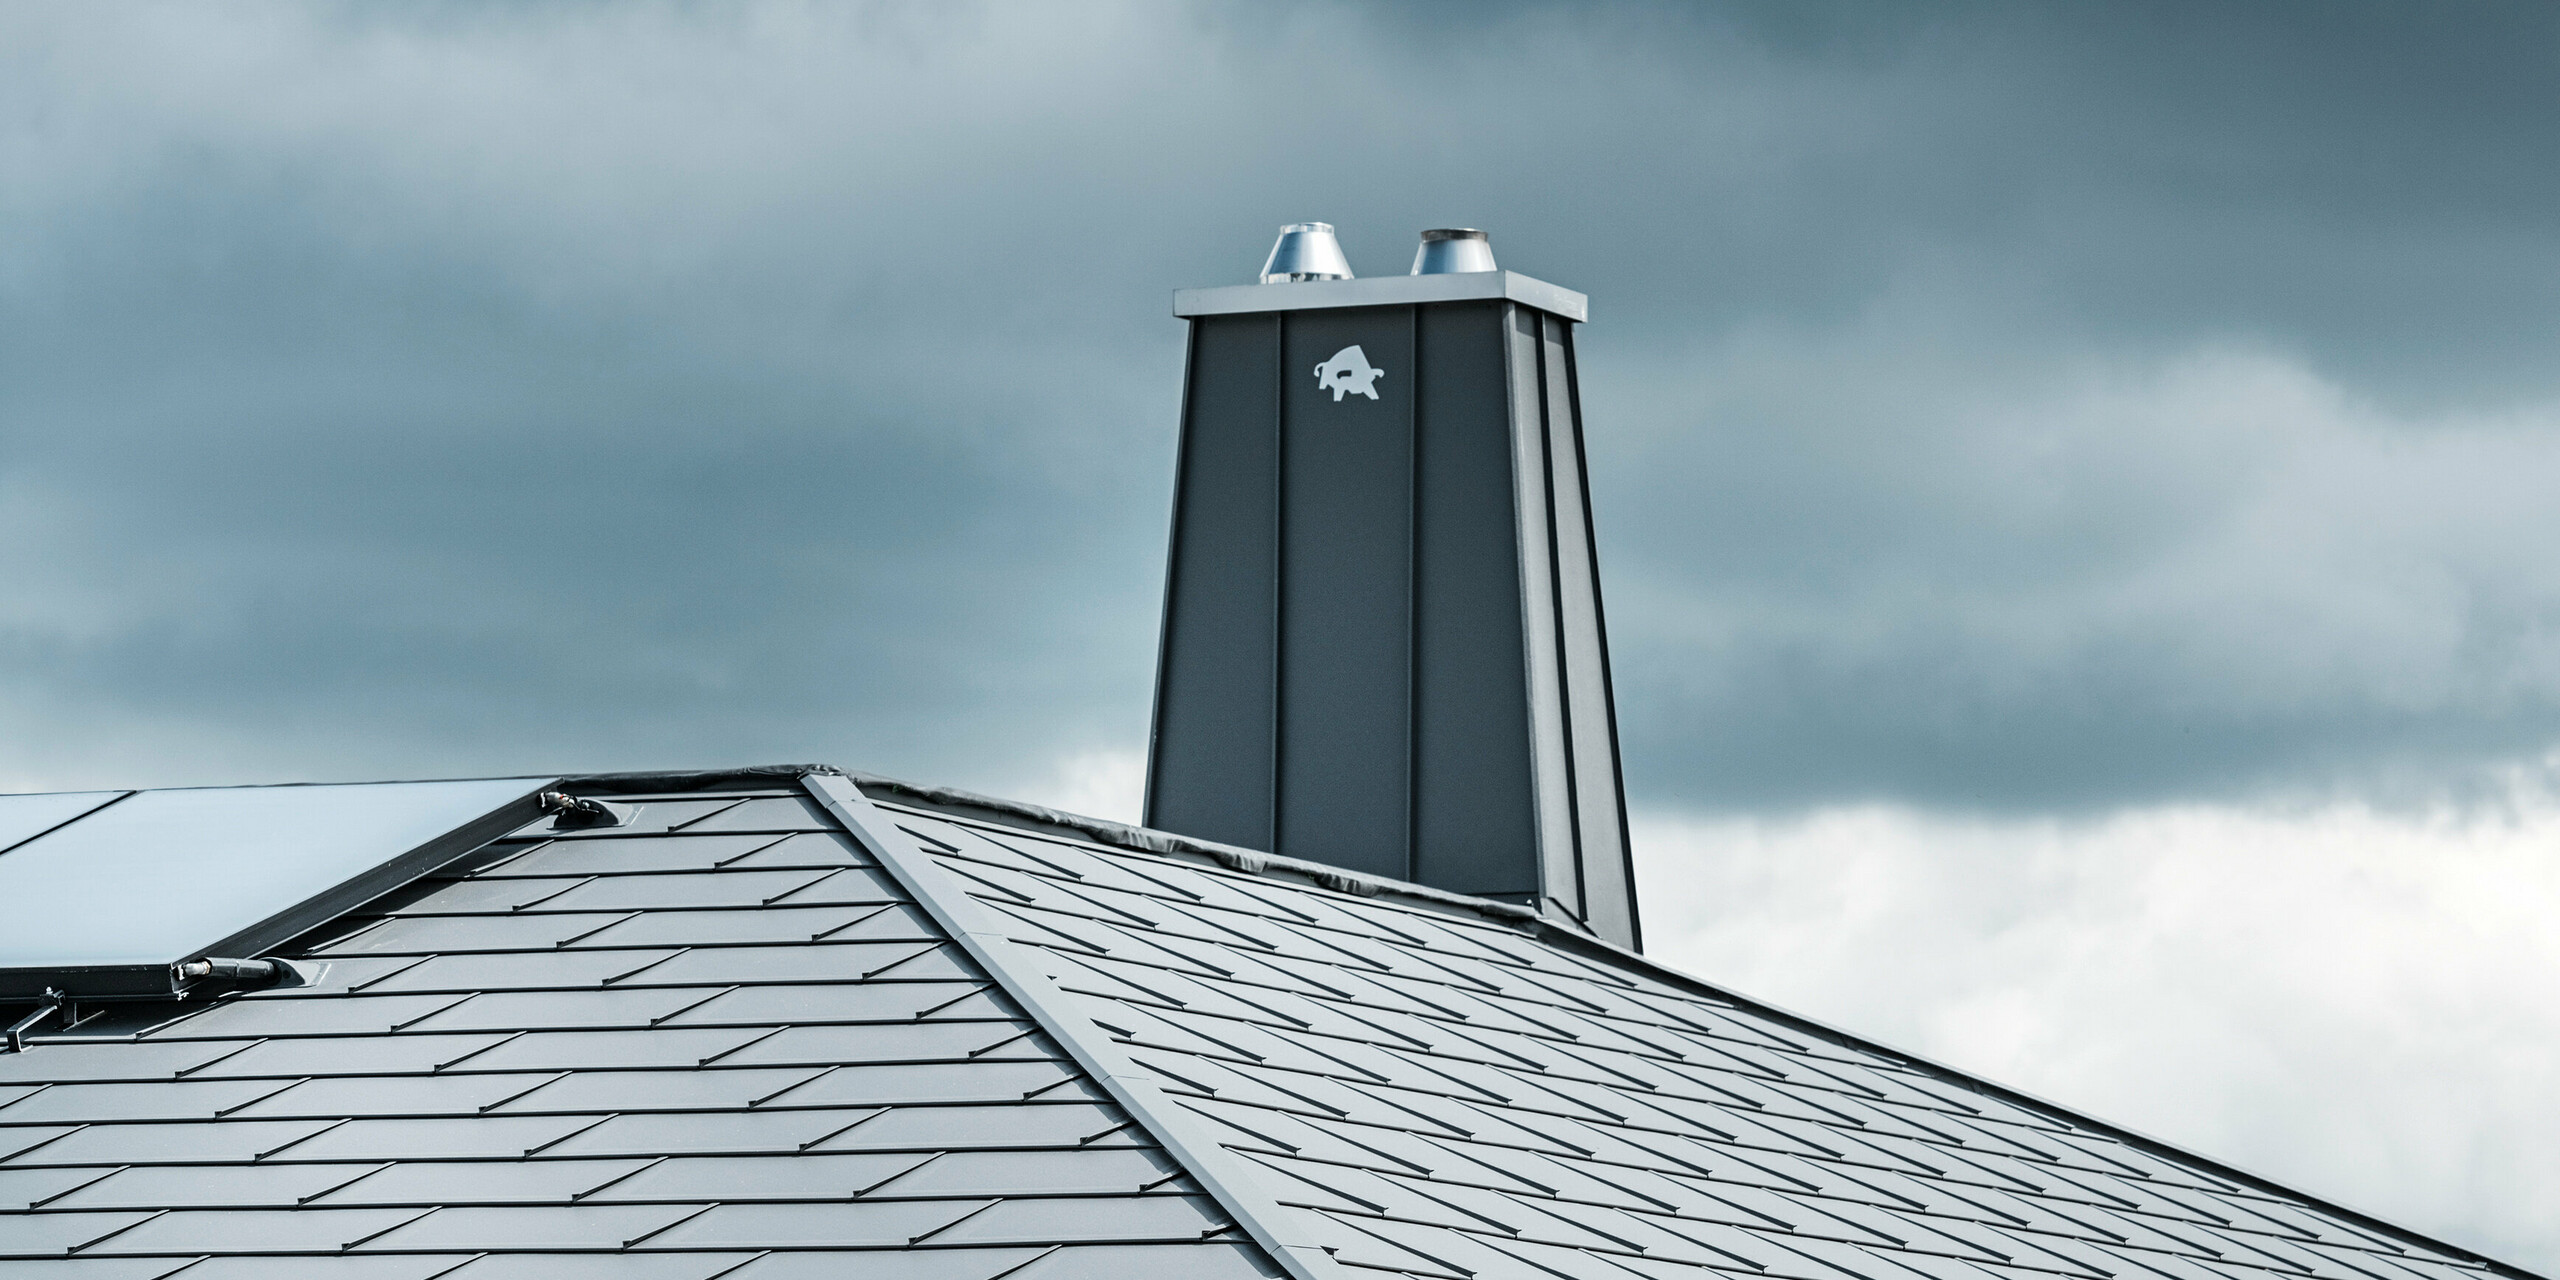 Pohled na střechu s oplechovaným komínem z plechu PREFALZ a nalepeným býkem - logo firmy PREFA